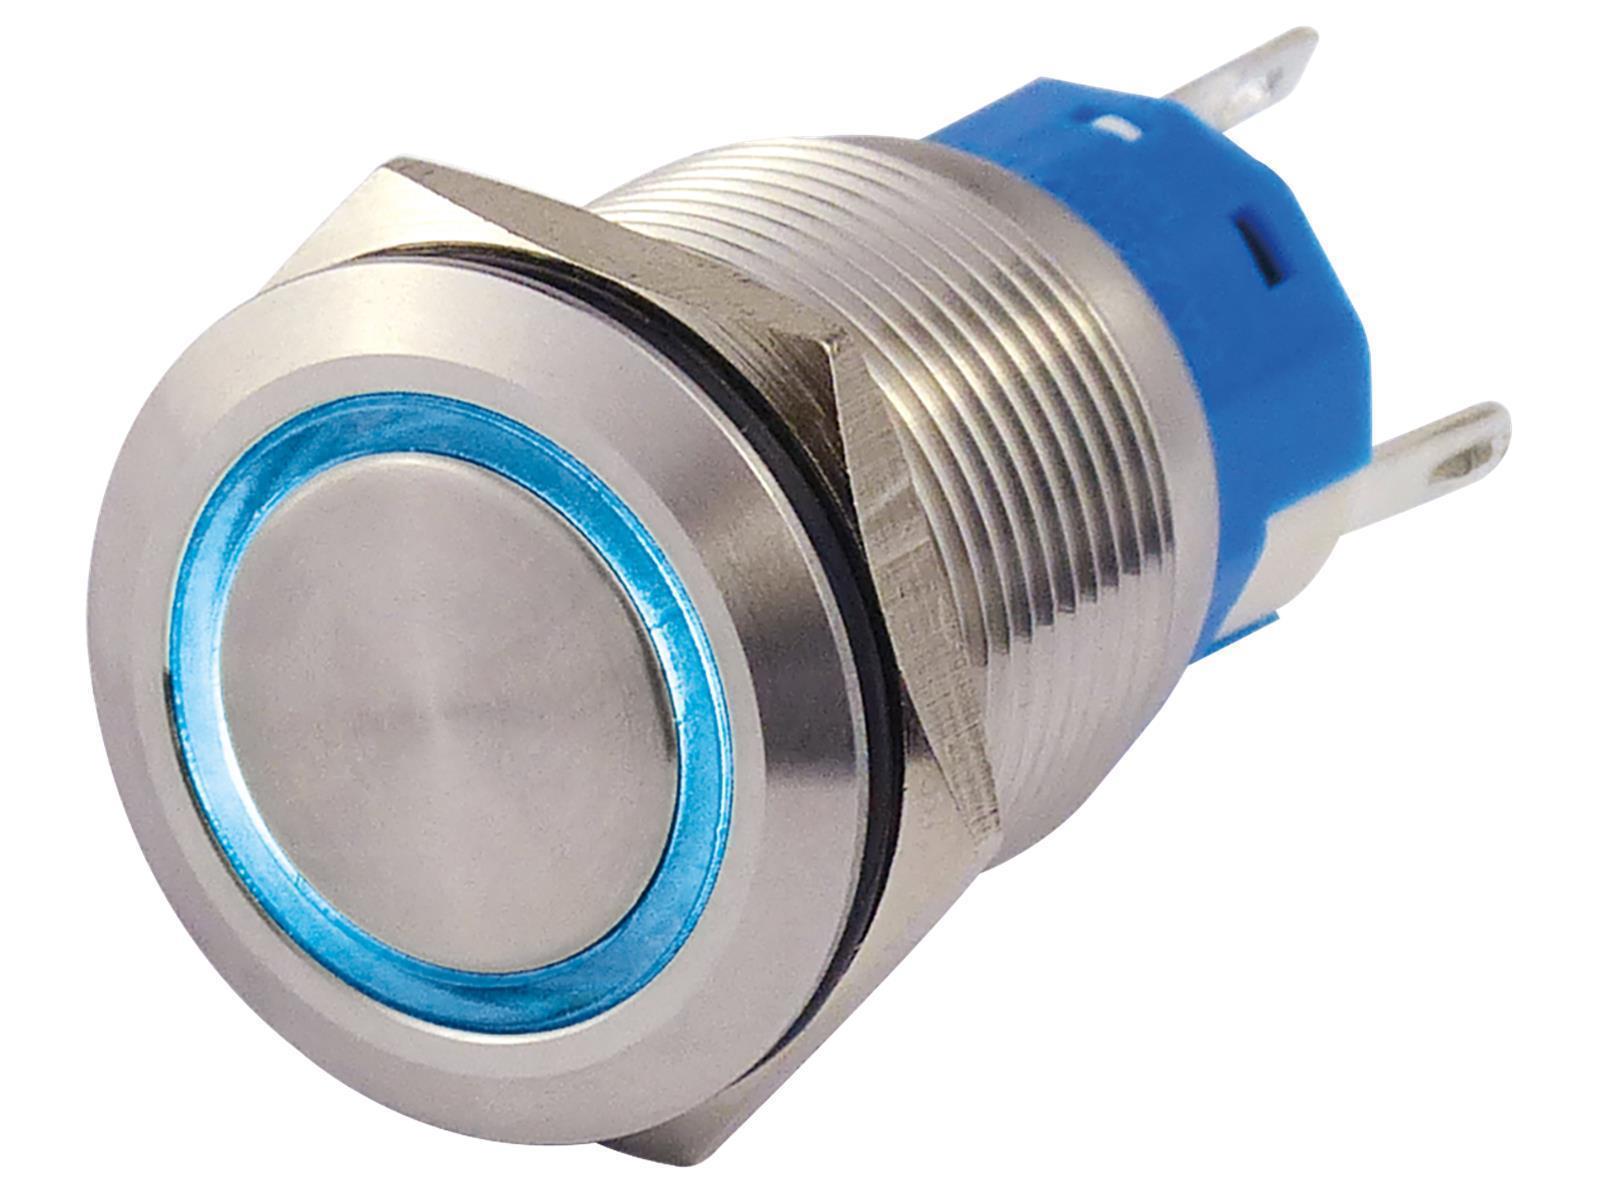 Vollmetallschalter mit Ringbeleuchtung, blau, 19mm-Ø, 250V, 5A, Lötanschluss